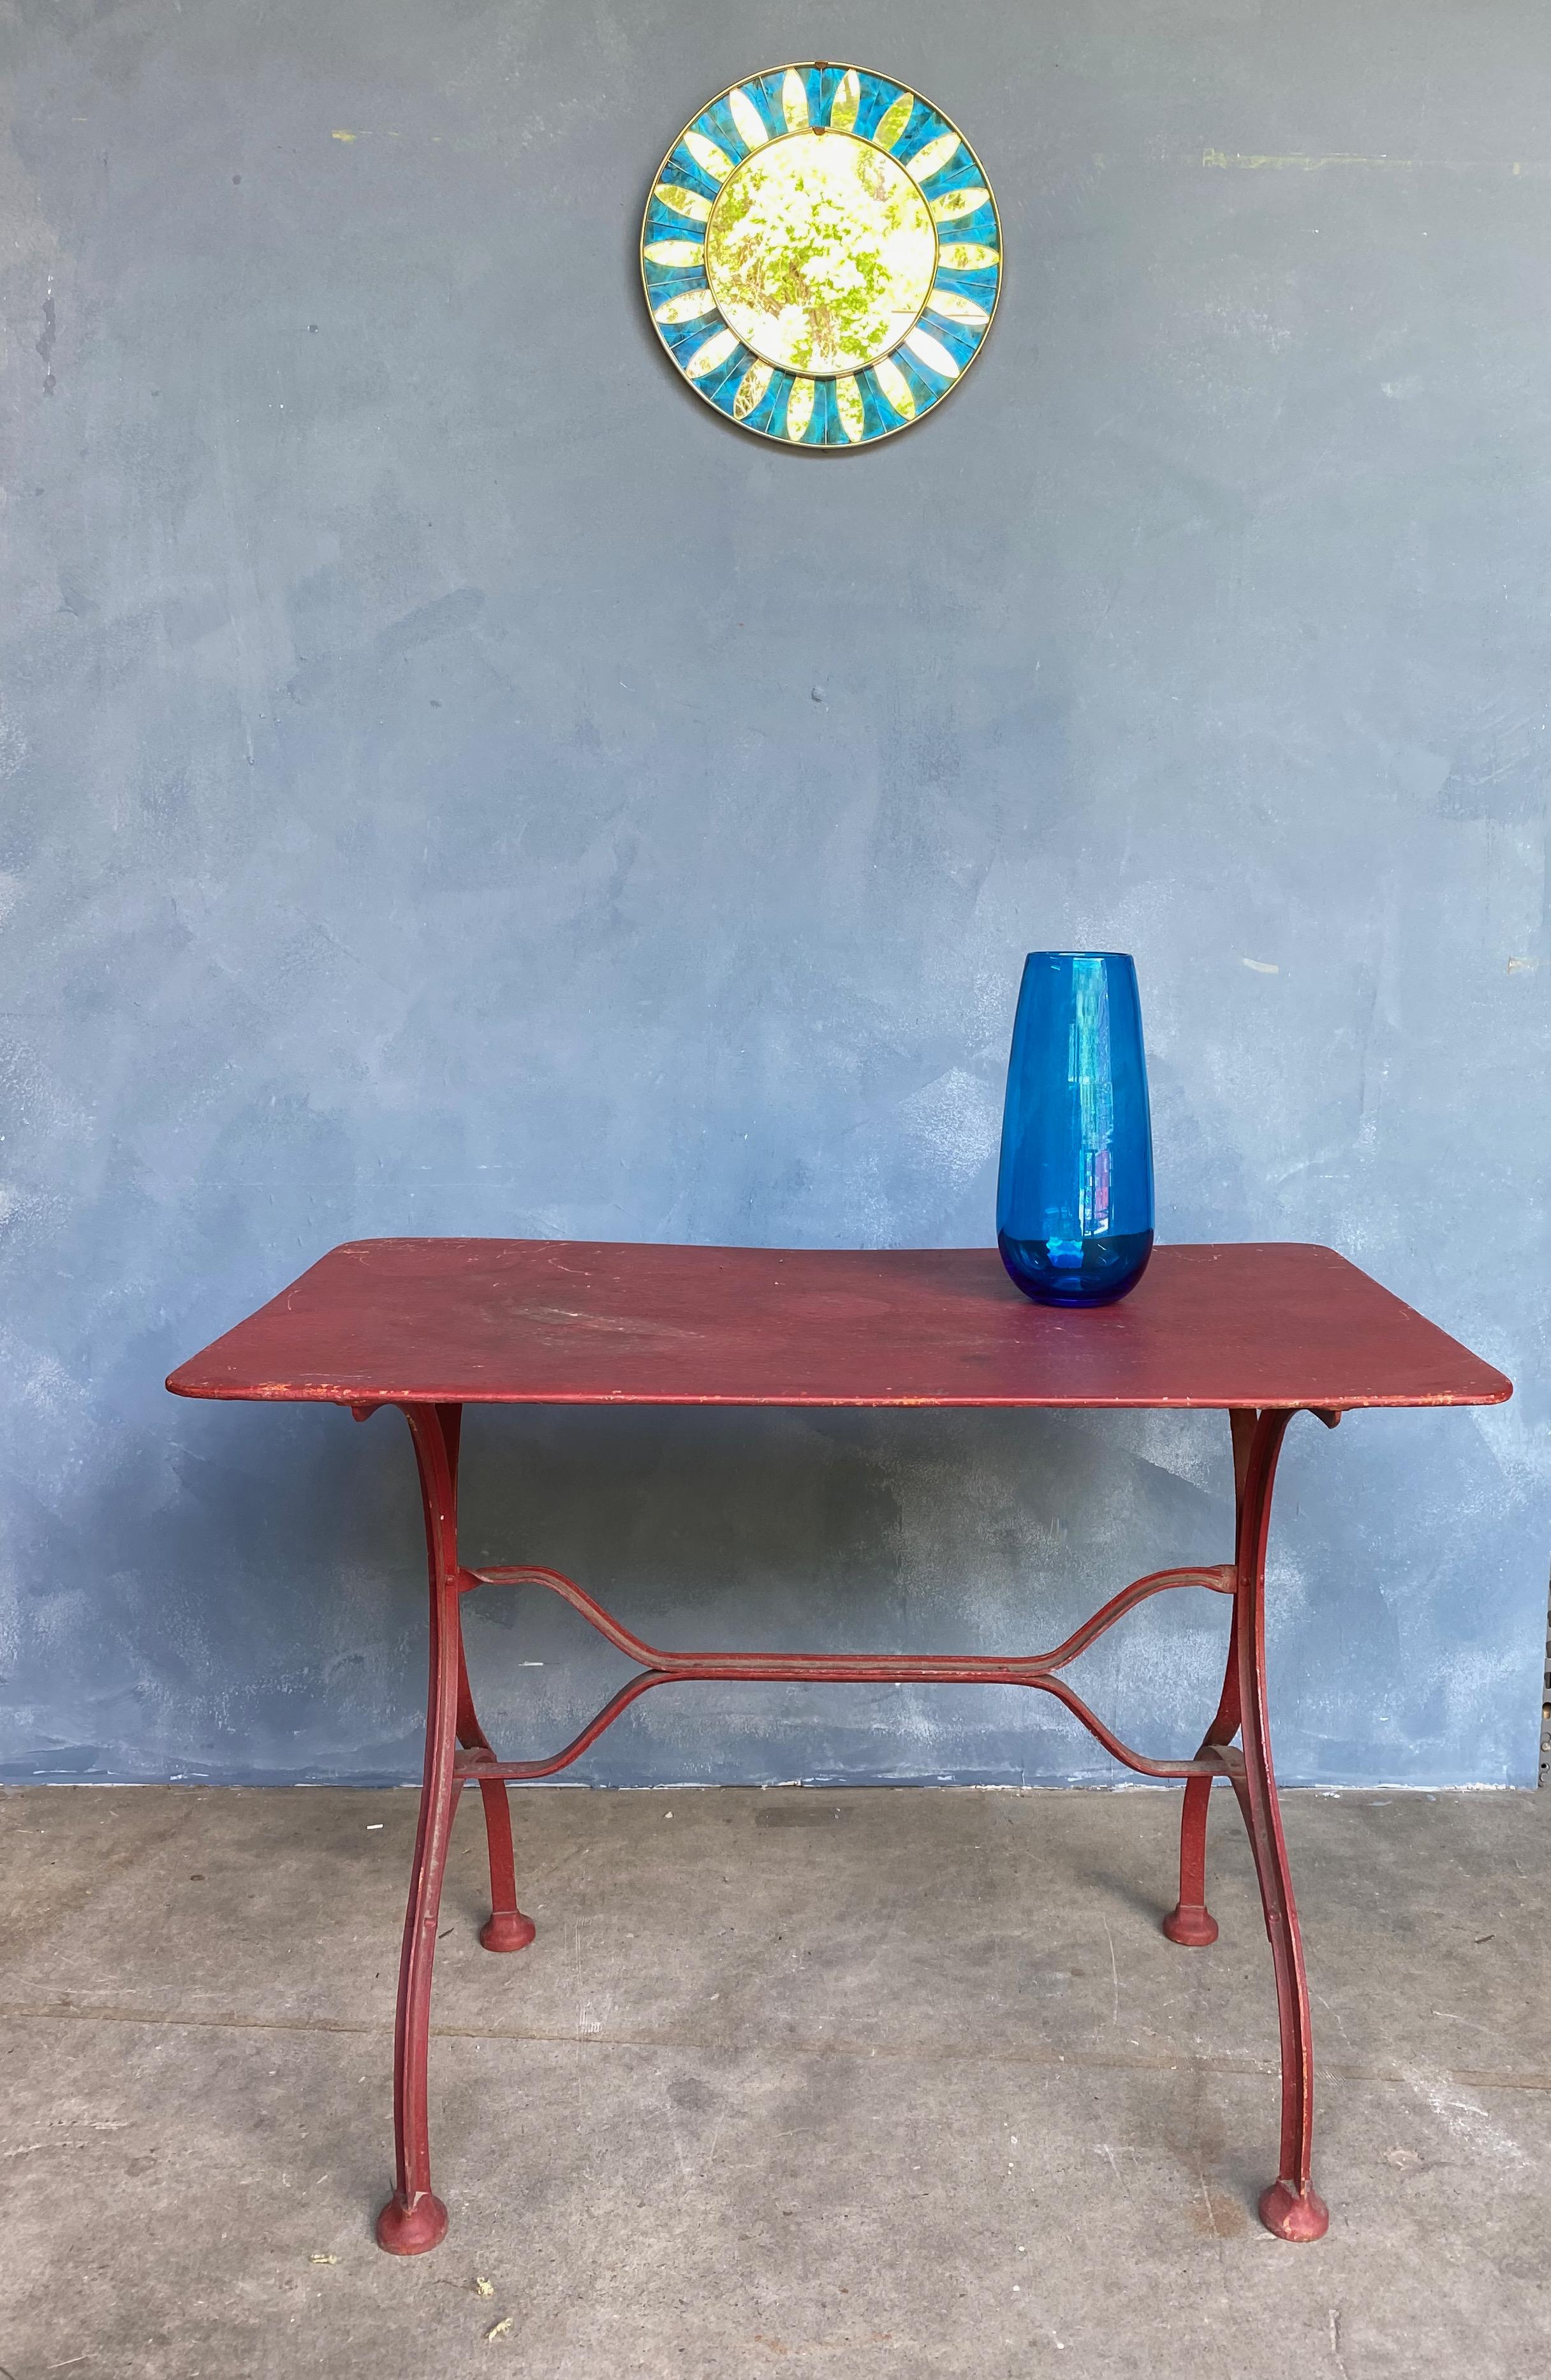 Dieser rot lackierte Gartentisch aus französischem Eisen verleiht jedem Außenbereich einen Hauch von Farbe und Vintage-Charme. Der klassische französische Bistro-Stil des Eisenfußes und die massive Metallplatte sind eine Anspielung auf das